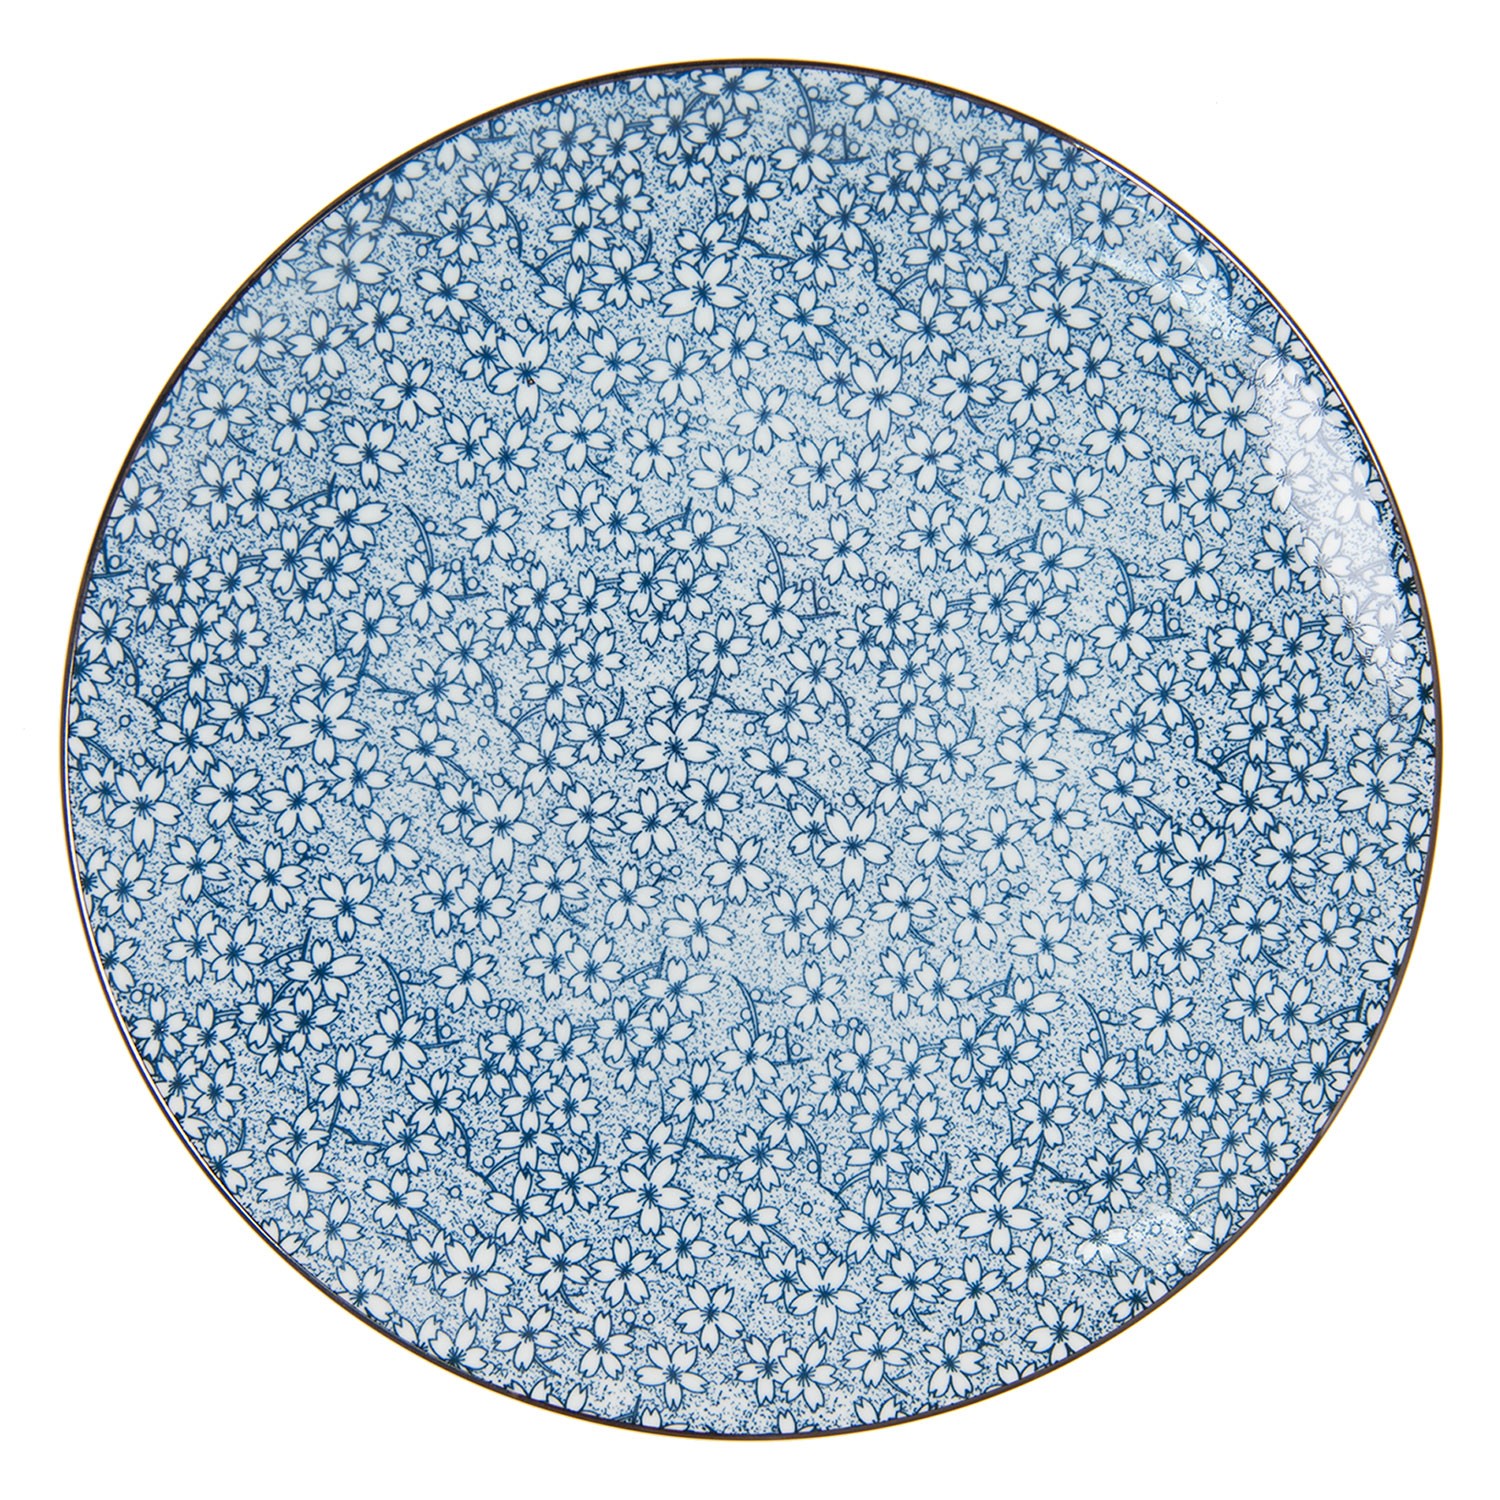 Jídelní talíř modré kvítky BlueFlow - Ø26 cm Clayre & Eef